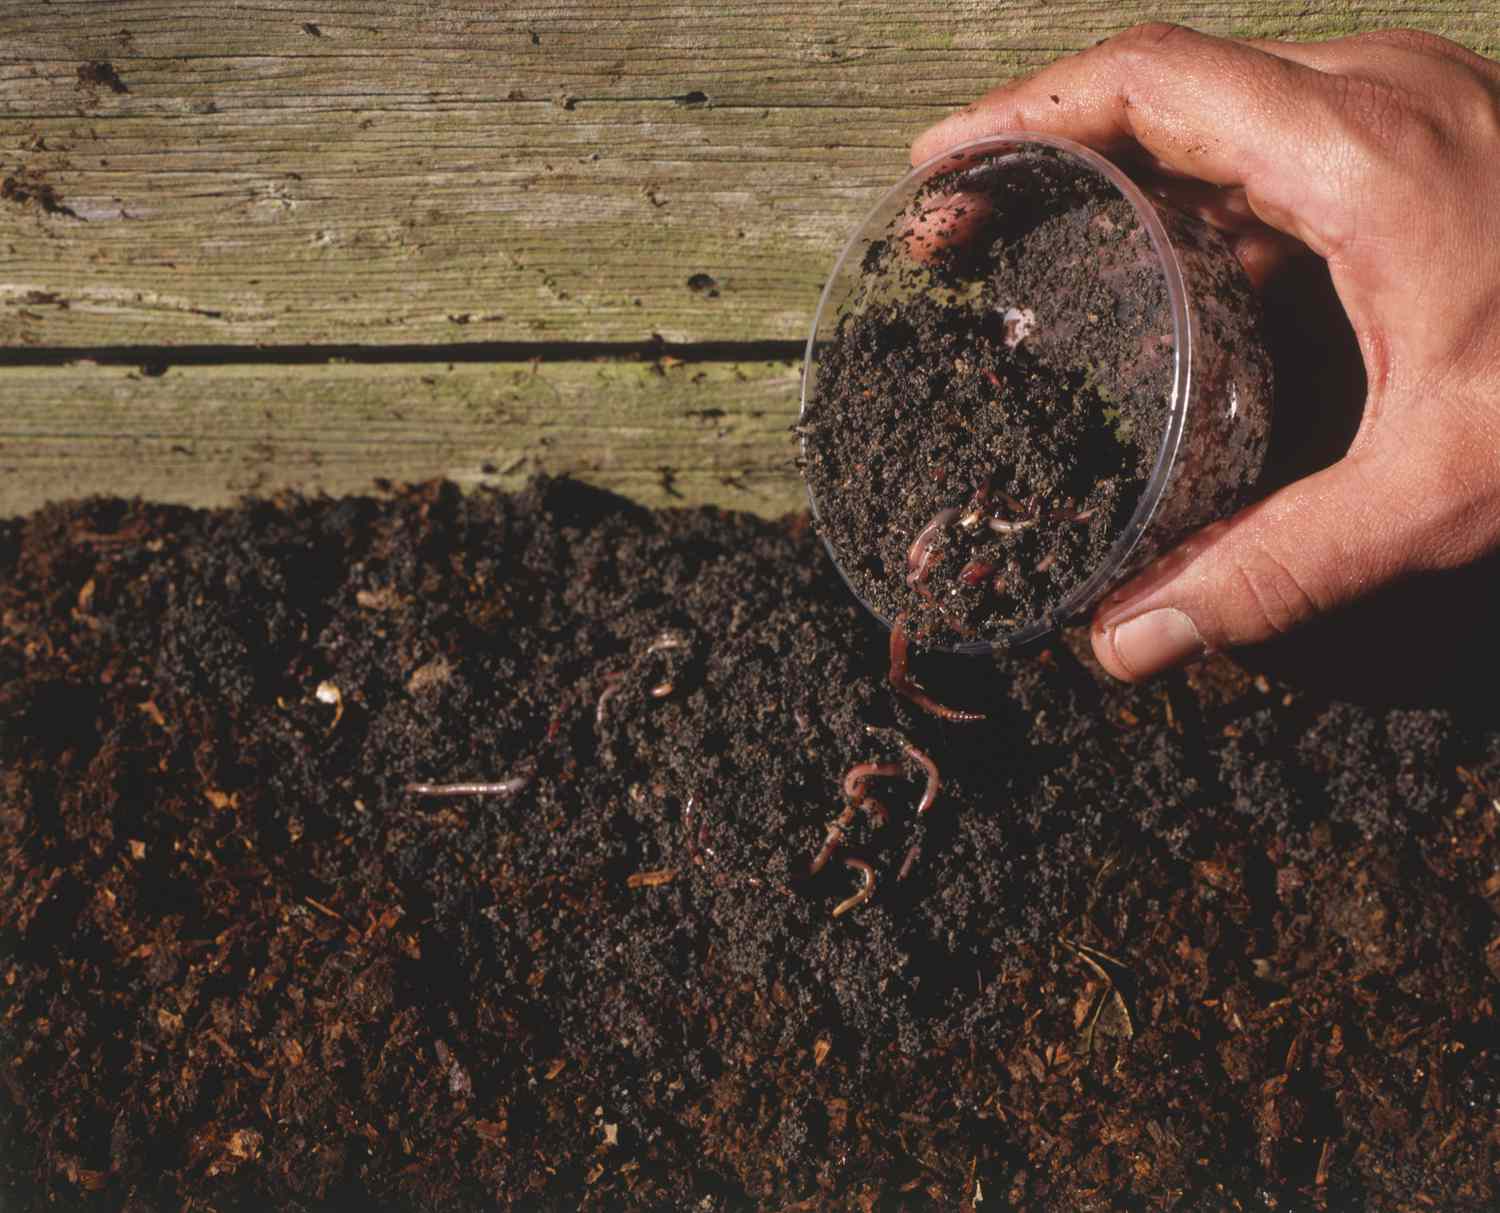 Hand schöpft einen Becher mit Erde und lebenden Würmern in einer Holzkiste